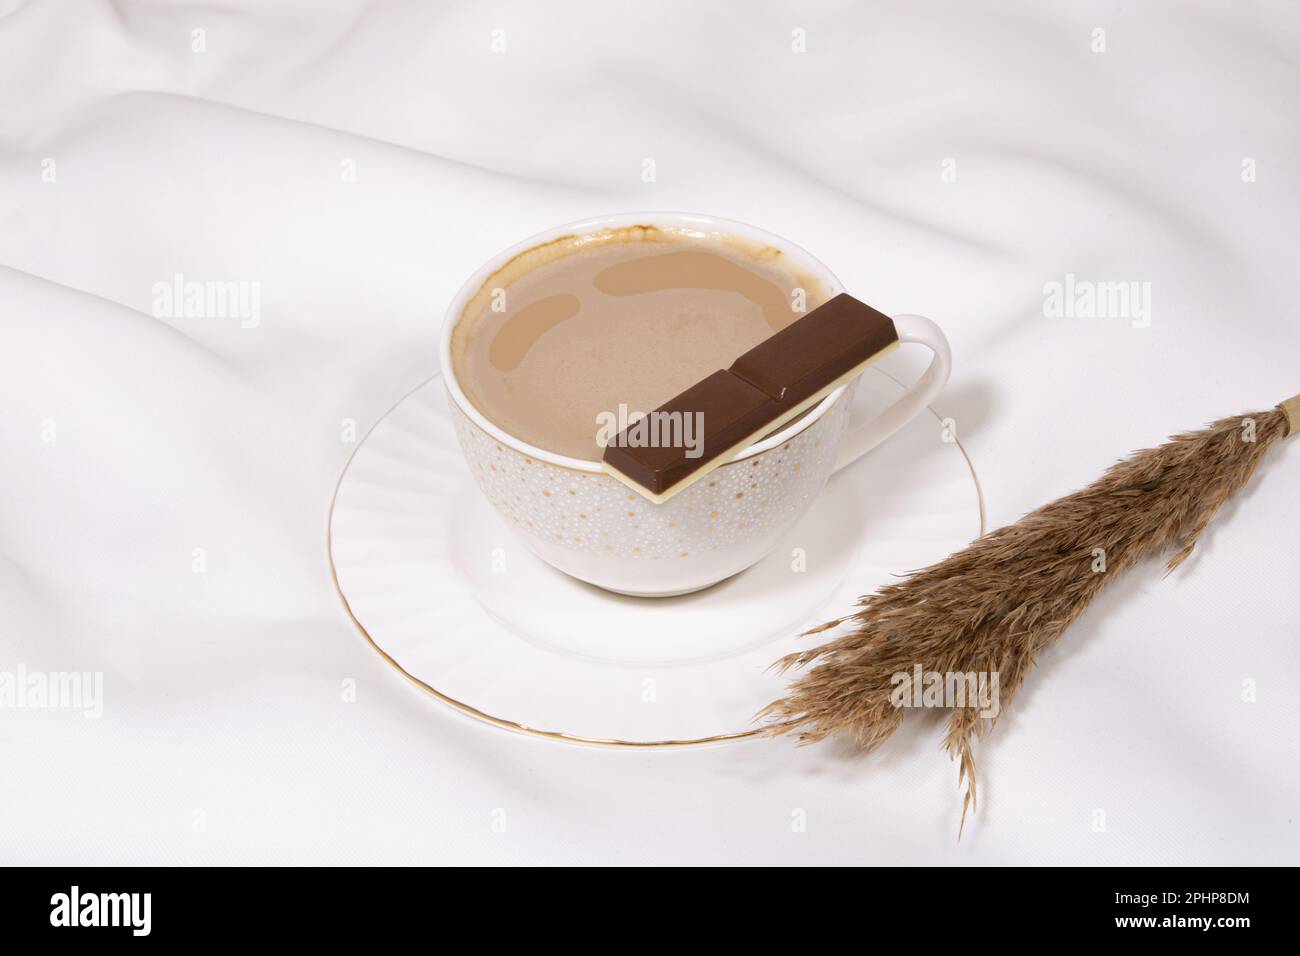 Tasse aus weißem Porzellan mit süßer dunkler Schokolade auf einem flachen weißen Kaffeegetränk in einer Tasse auf weißem ästhetischem Hintergrund, Bild-ID: 2PHP8DM Stockfoto